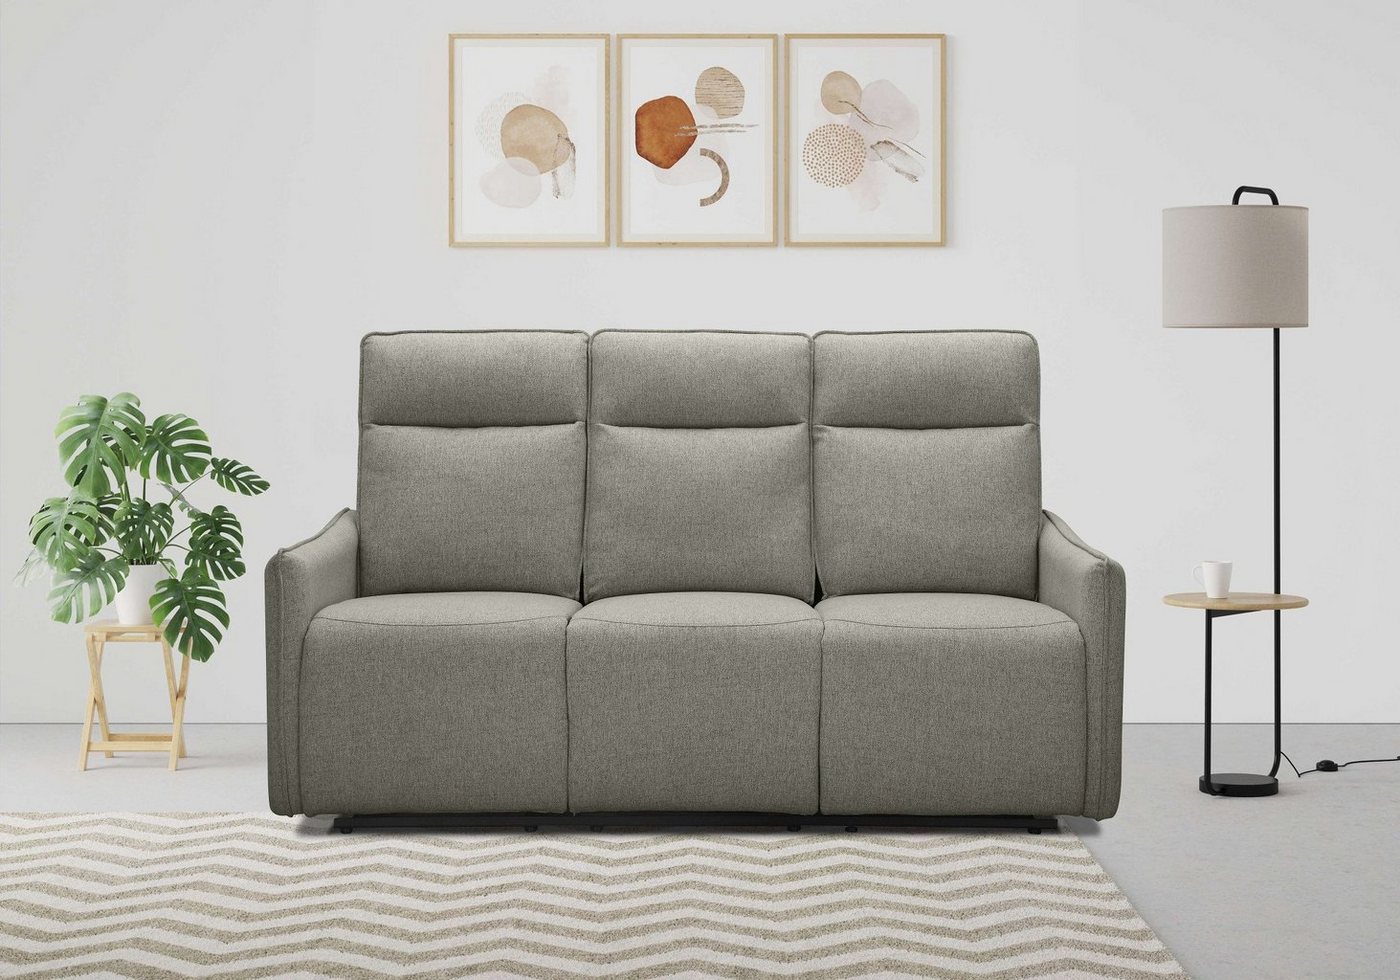 Dorel Home 3-Sitzer Lugo, Kinosofa mit Reclinerfunktion in Kunstleder und Webstoff, mit manueller Relaxfunktion in 2 Sitzen von Dorel Home